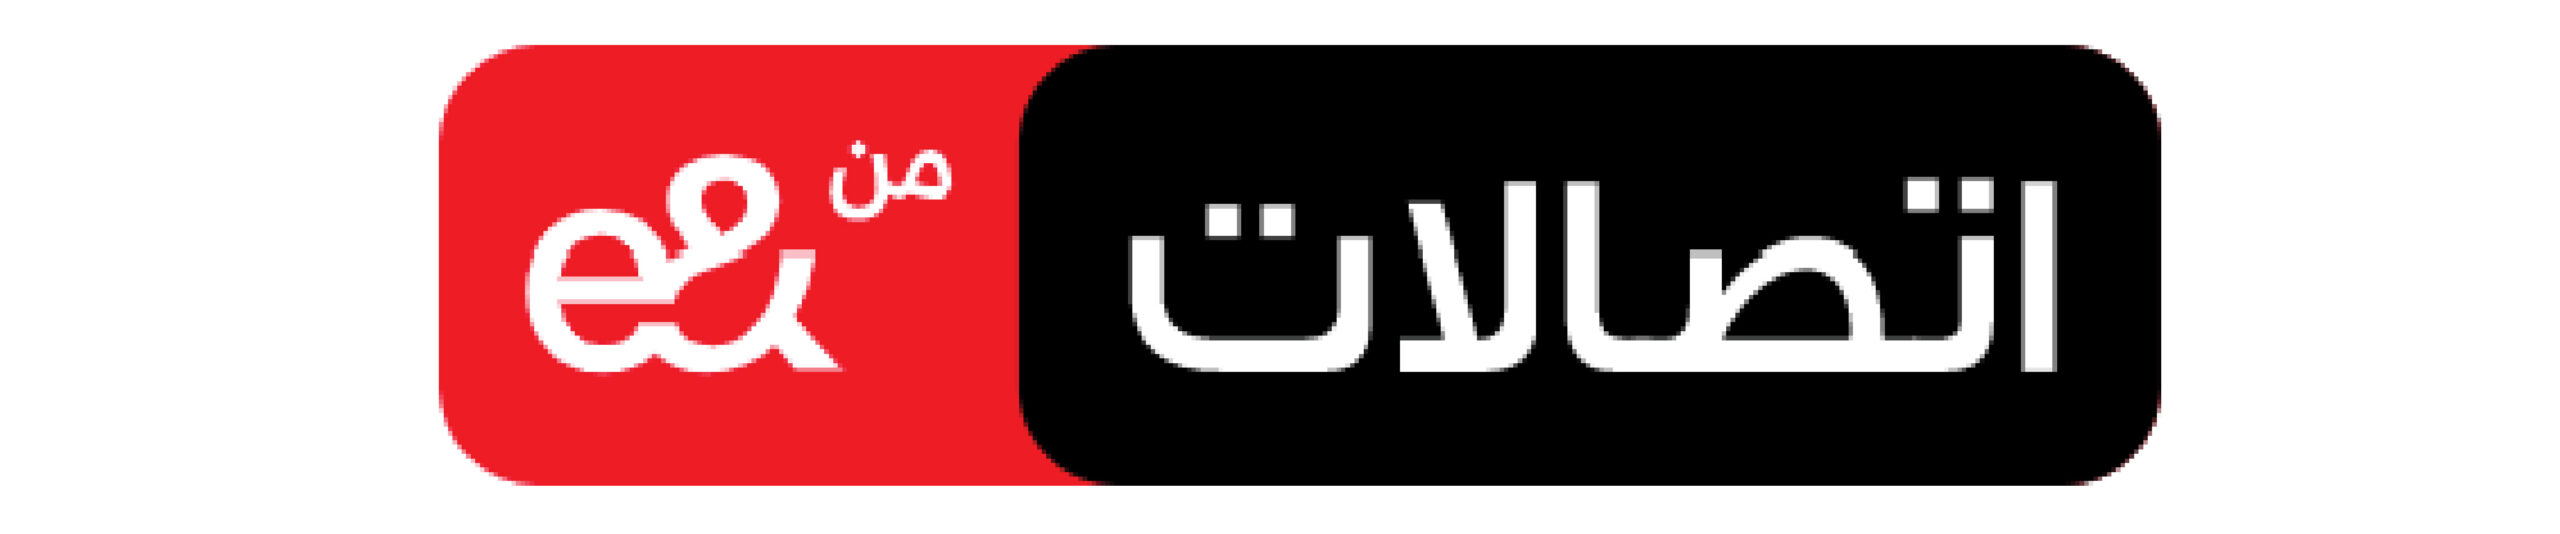 logo for website-05